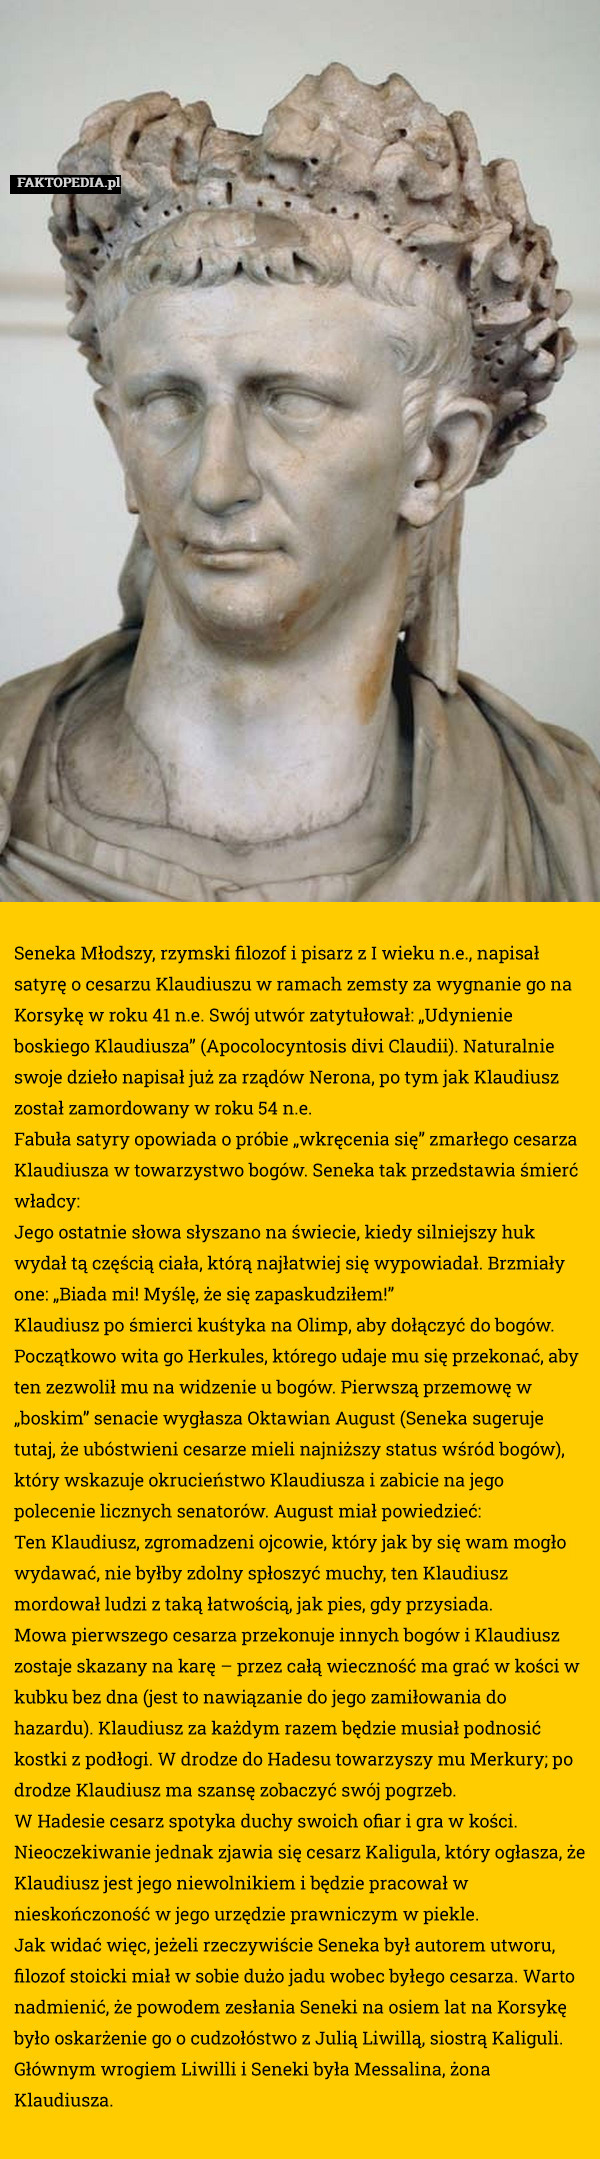 























Seneka Młodszy, rzymski filozof i pisarz z I wieku